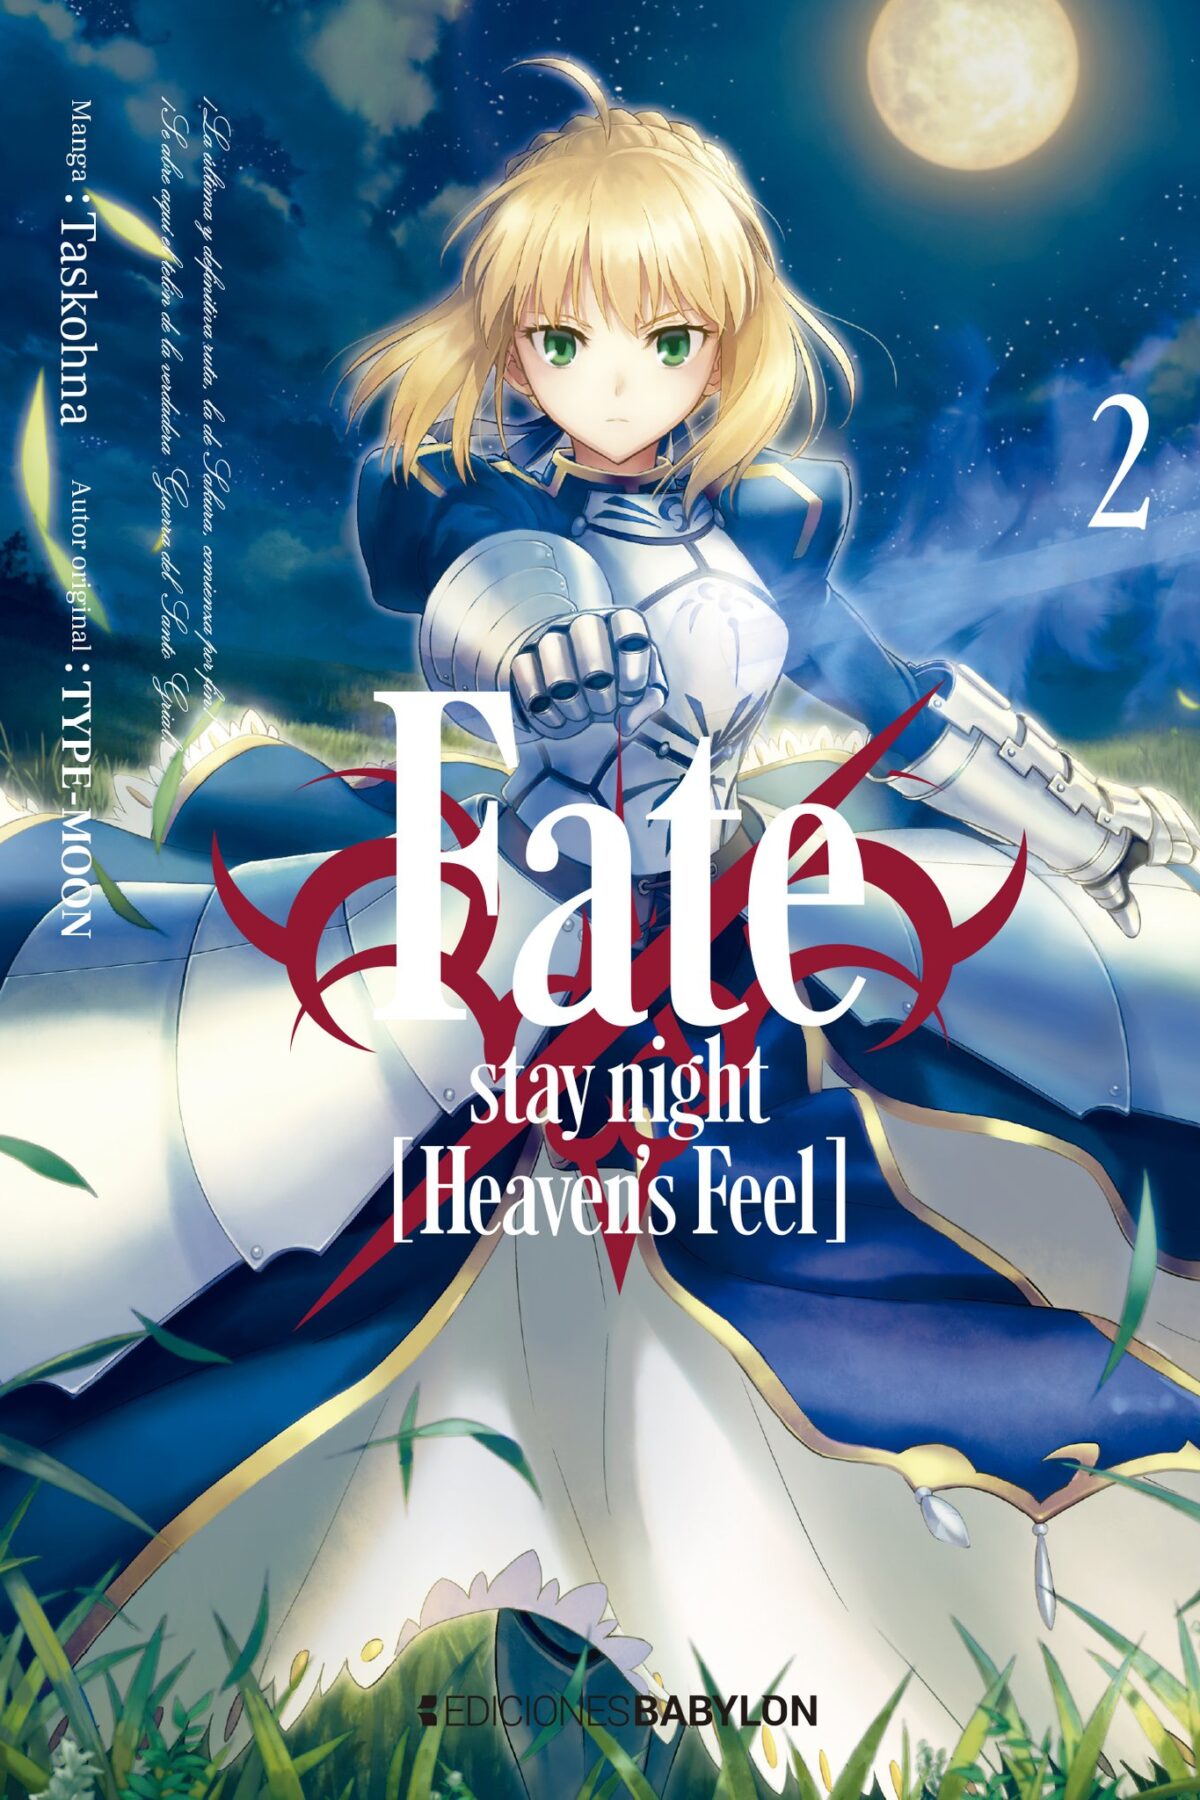 Manga Fate stay night Heavens Feel